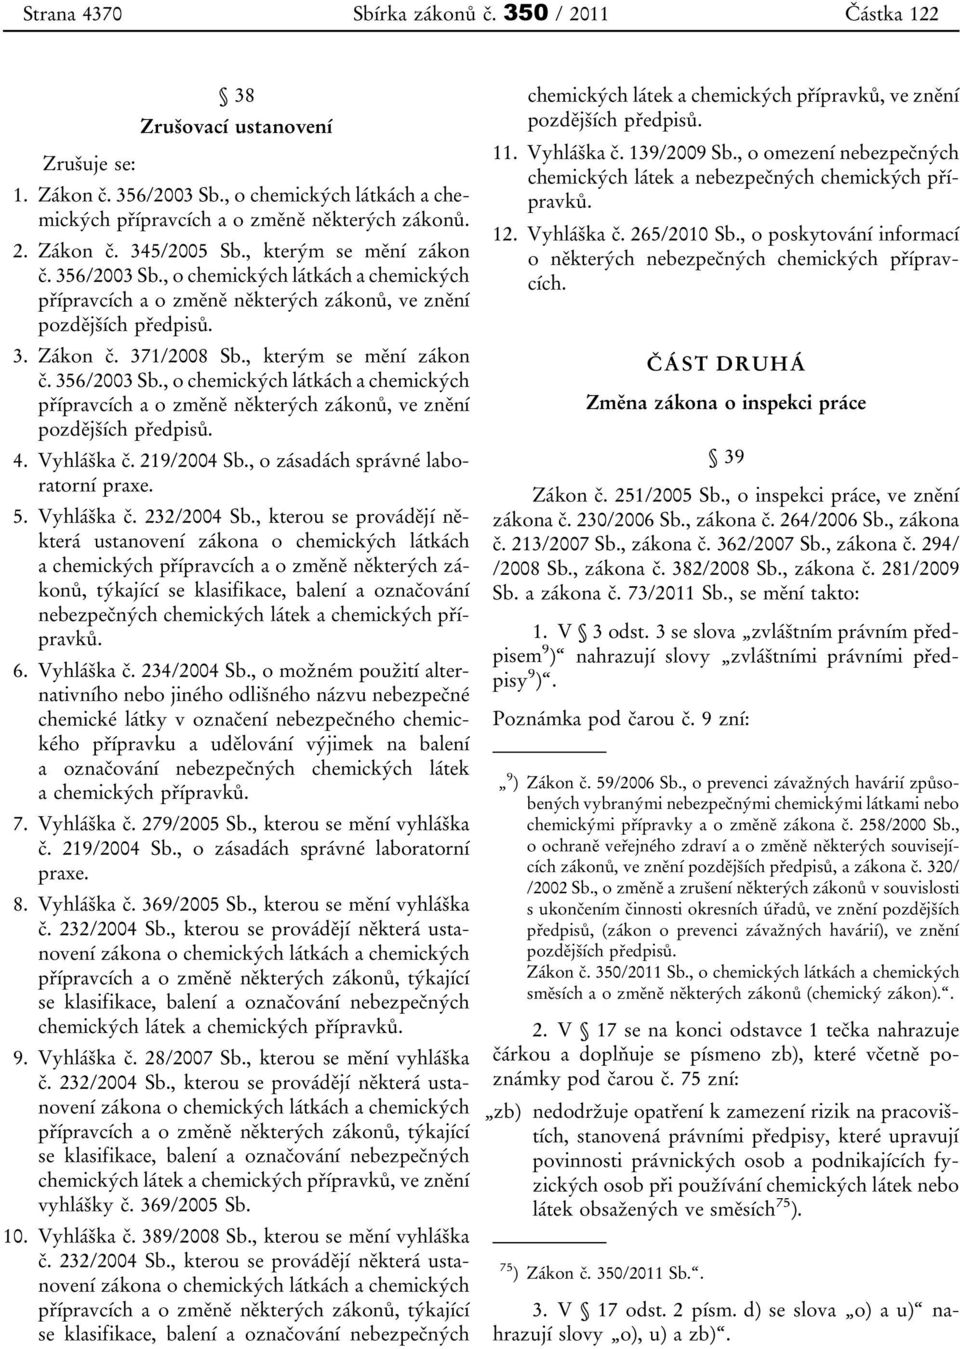 Vyhláška č. 219/2004 Sb., o zásadách správné laboratorní praxe. 5. Vyhláška č. 232/2004 Sb.